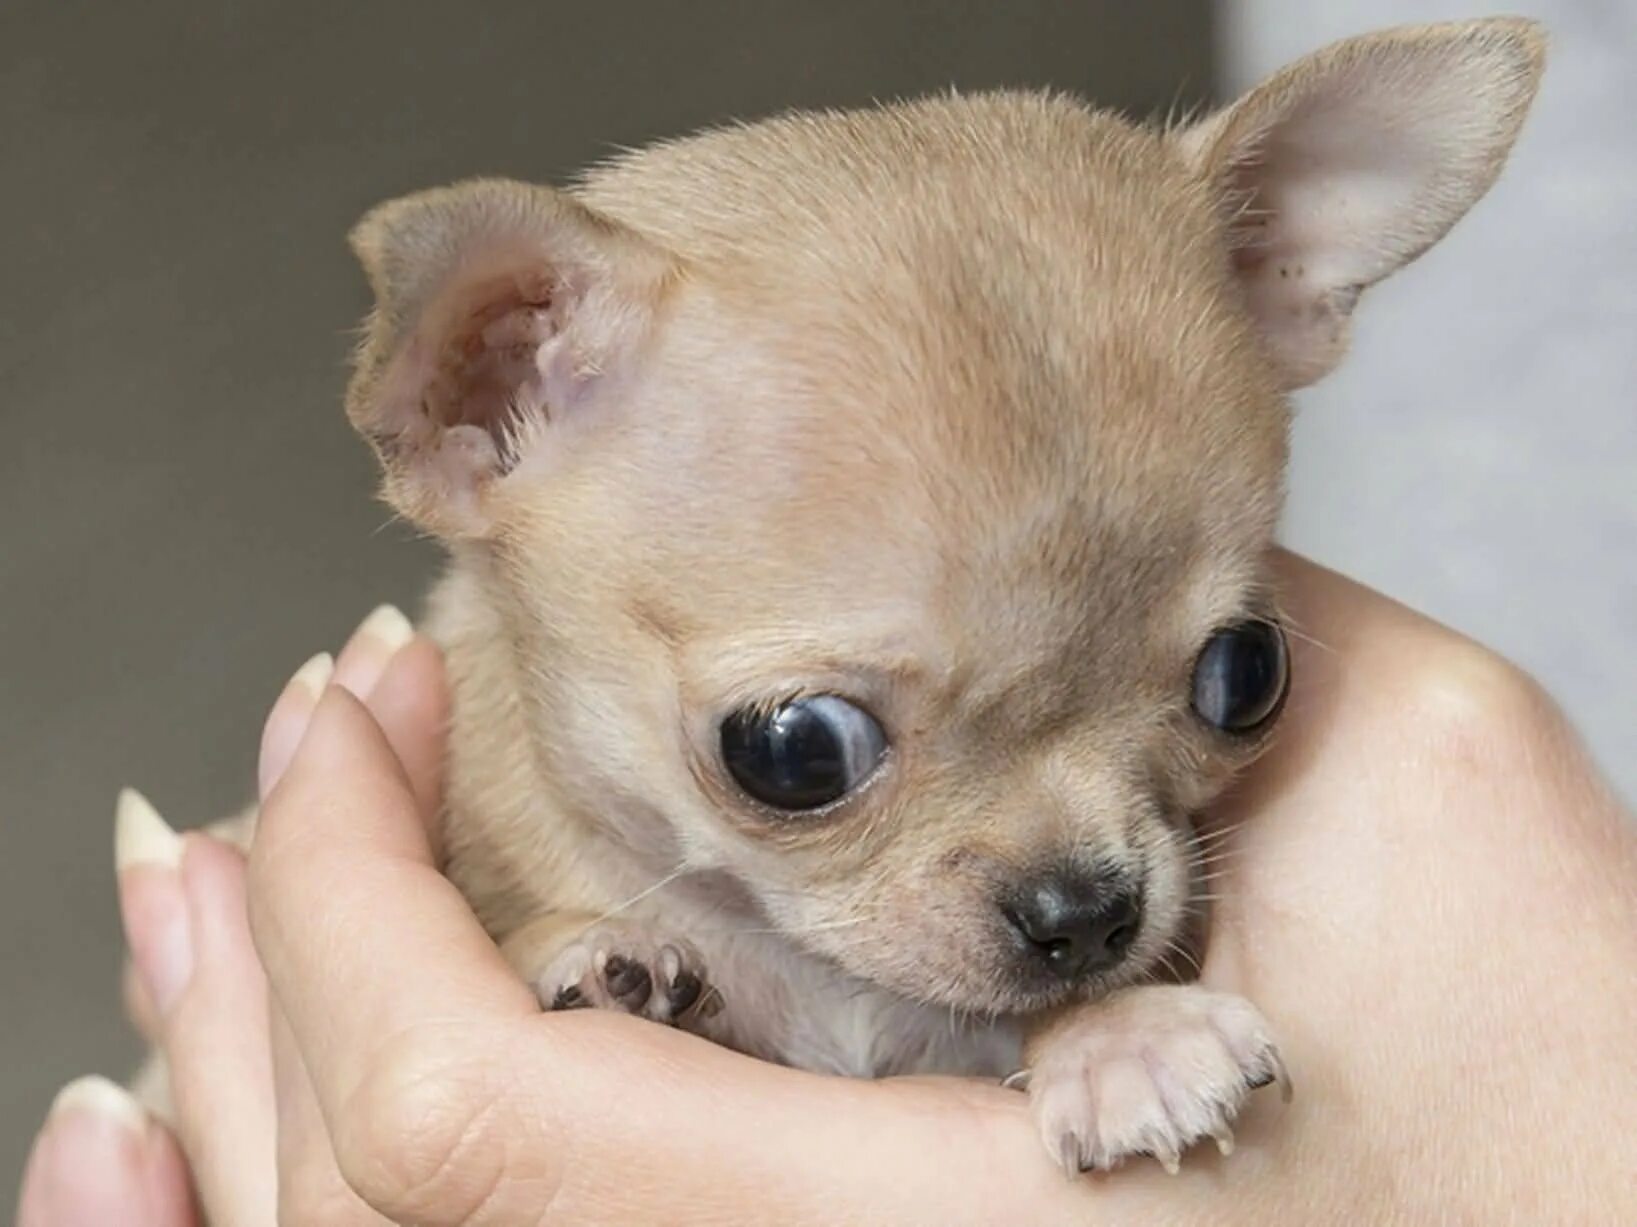 Название породы самой маленькой собаки. Чихуахуа палевый. Чихуахуа палевый гладкошерстный. Чихуахуа Милли. Маленькая собачка чихуахуа.